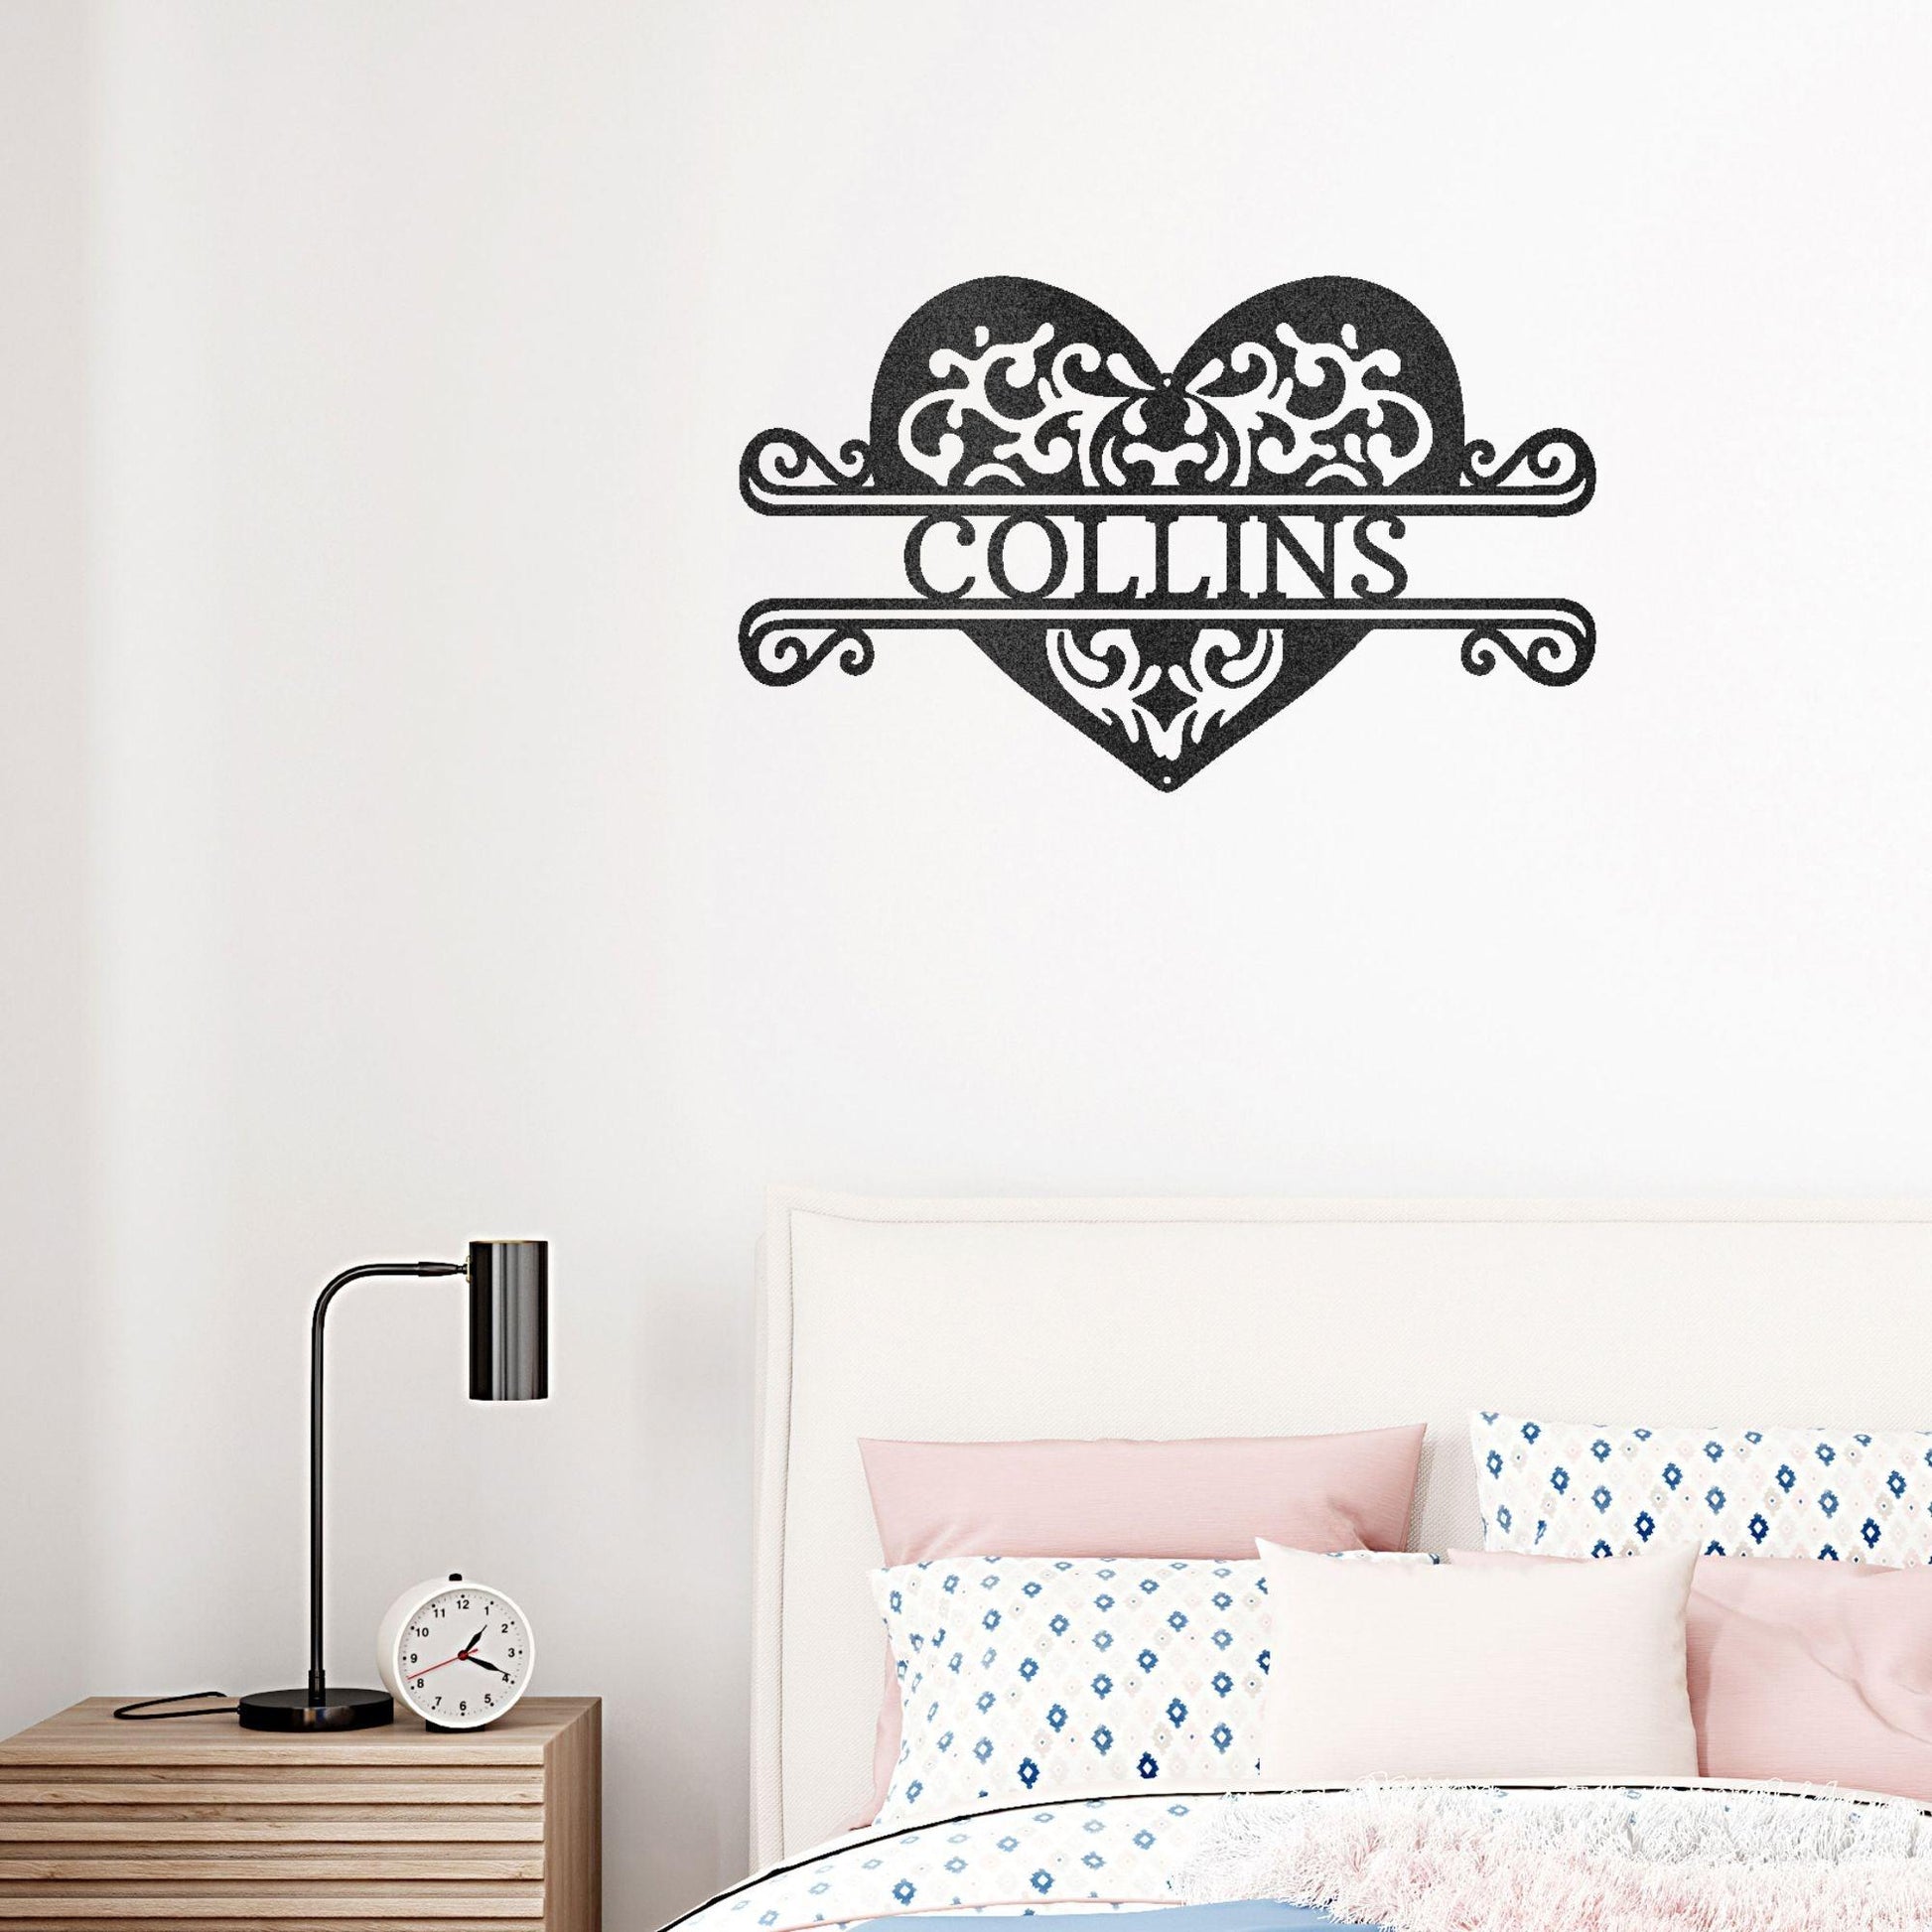 Fancy Heart Custom Name Steel Wall Sign - Mallard Moon Gift Shop